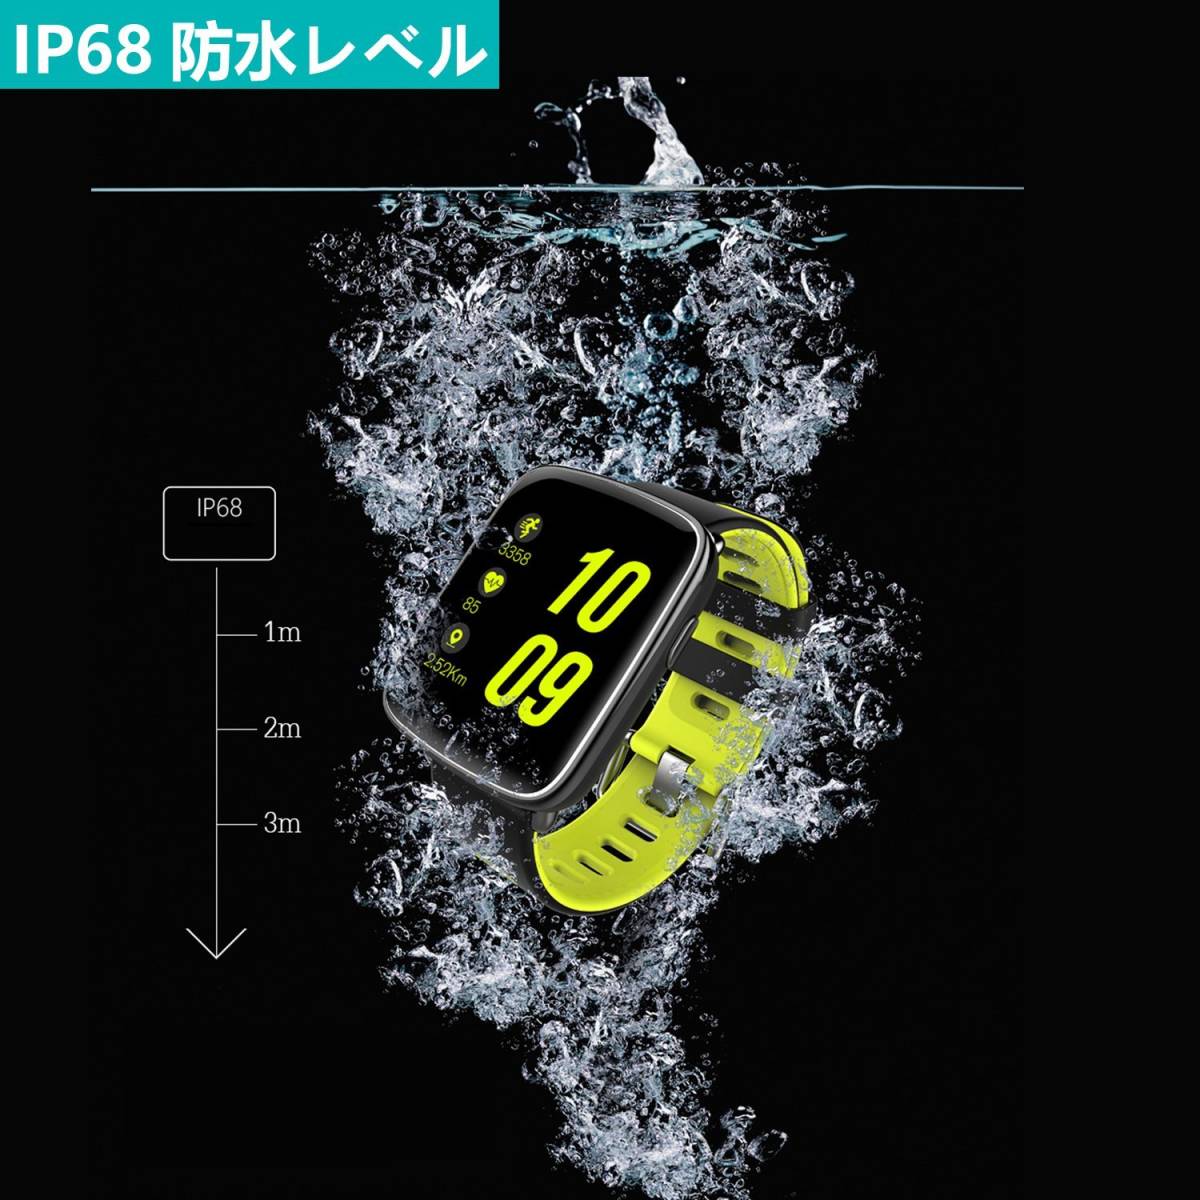 [ новый товар 1 иен ] смарт-часы 1.54 дюймовый HD Smart браслет пульсомер деятельность количество итого многофункциональный наручные часы SMS шагомер потребление калории отметка ..